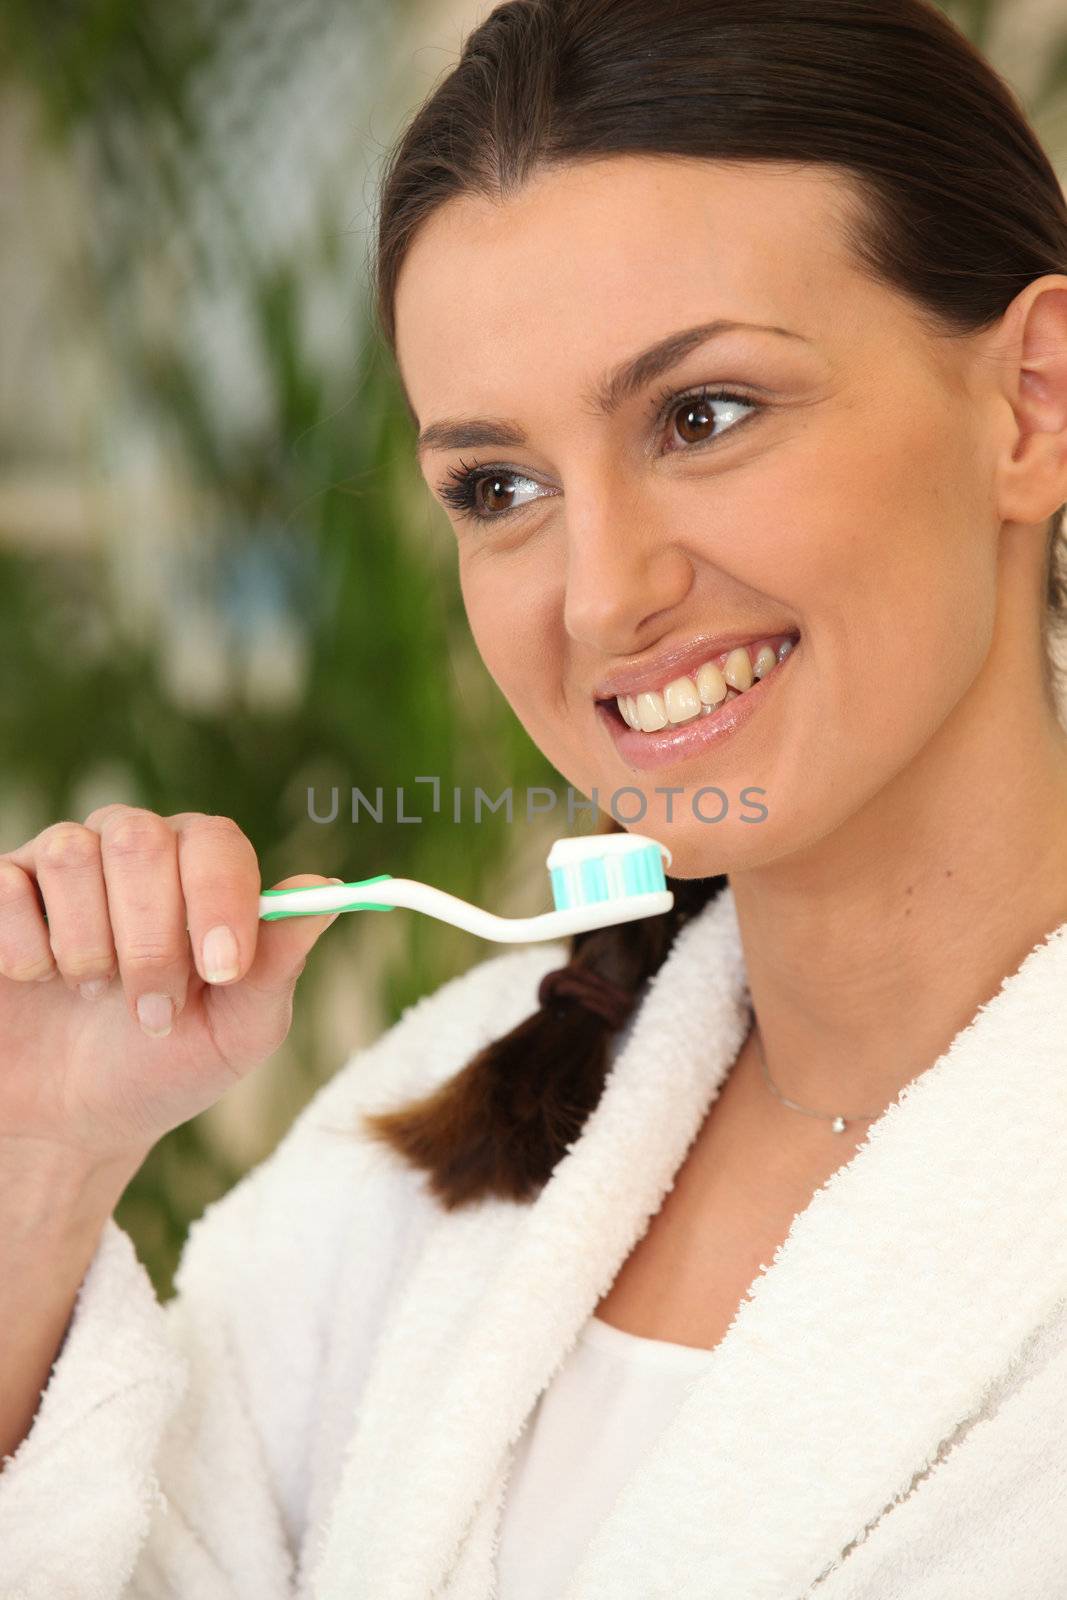 Woman brushing her teeth by phovoir